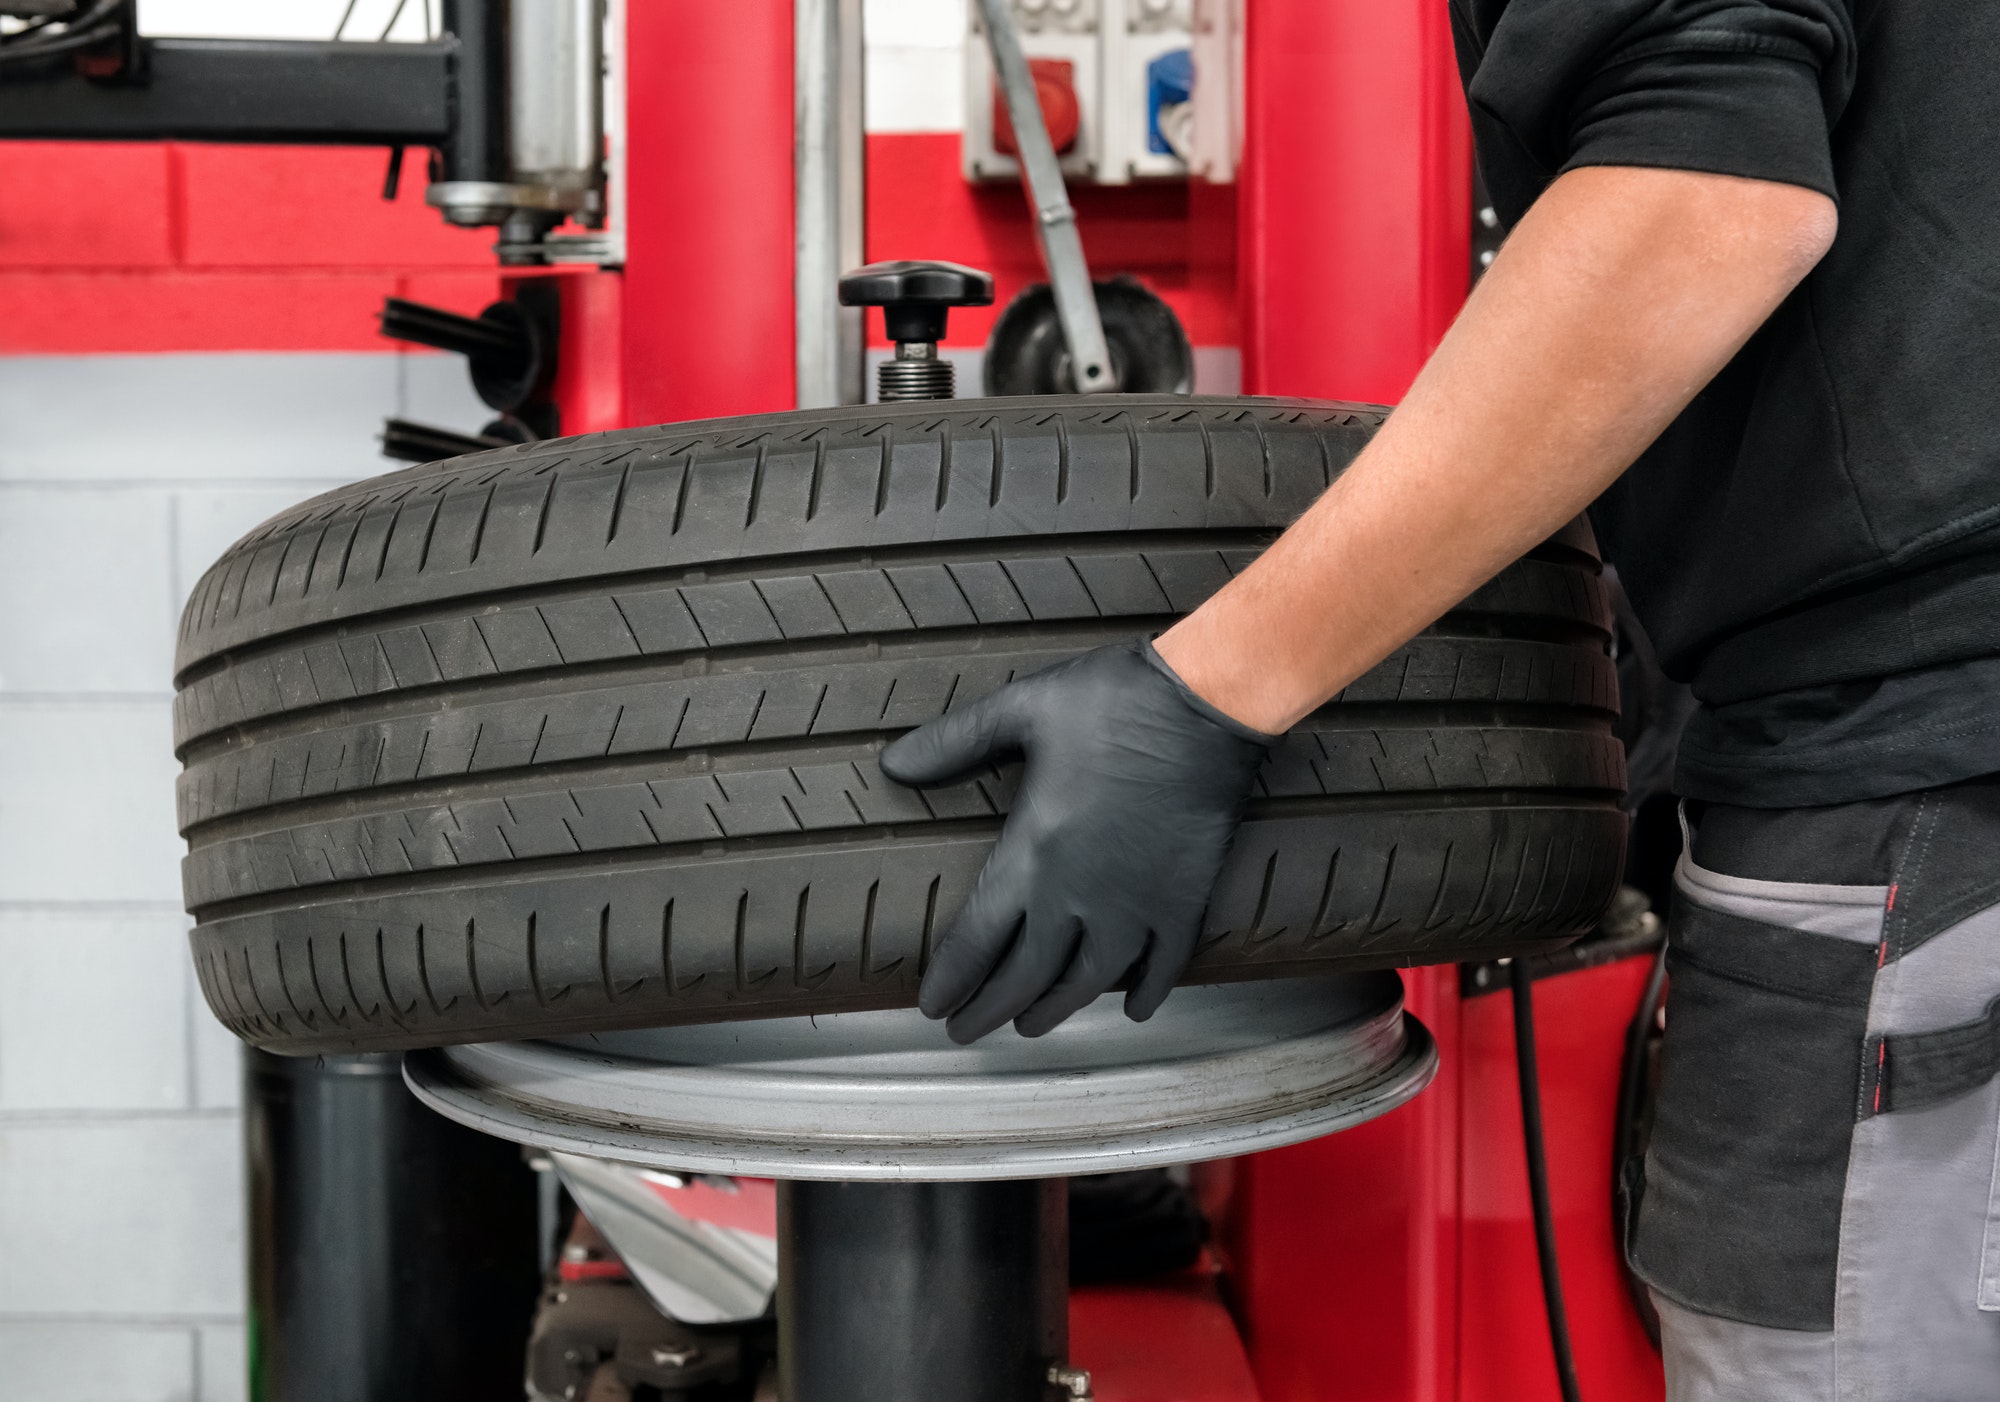 Démonte pneu semi-automatique: un compromis idéal pour l'efficacité des ateliers